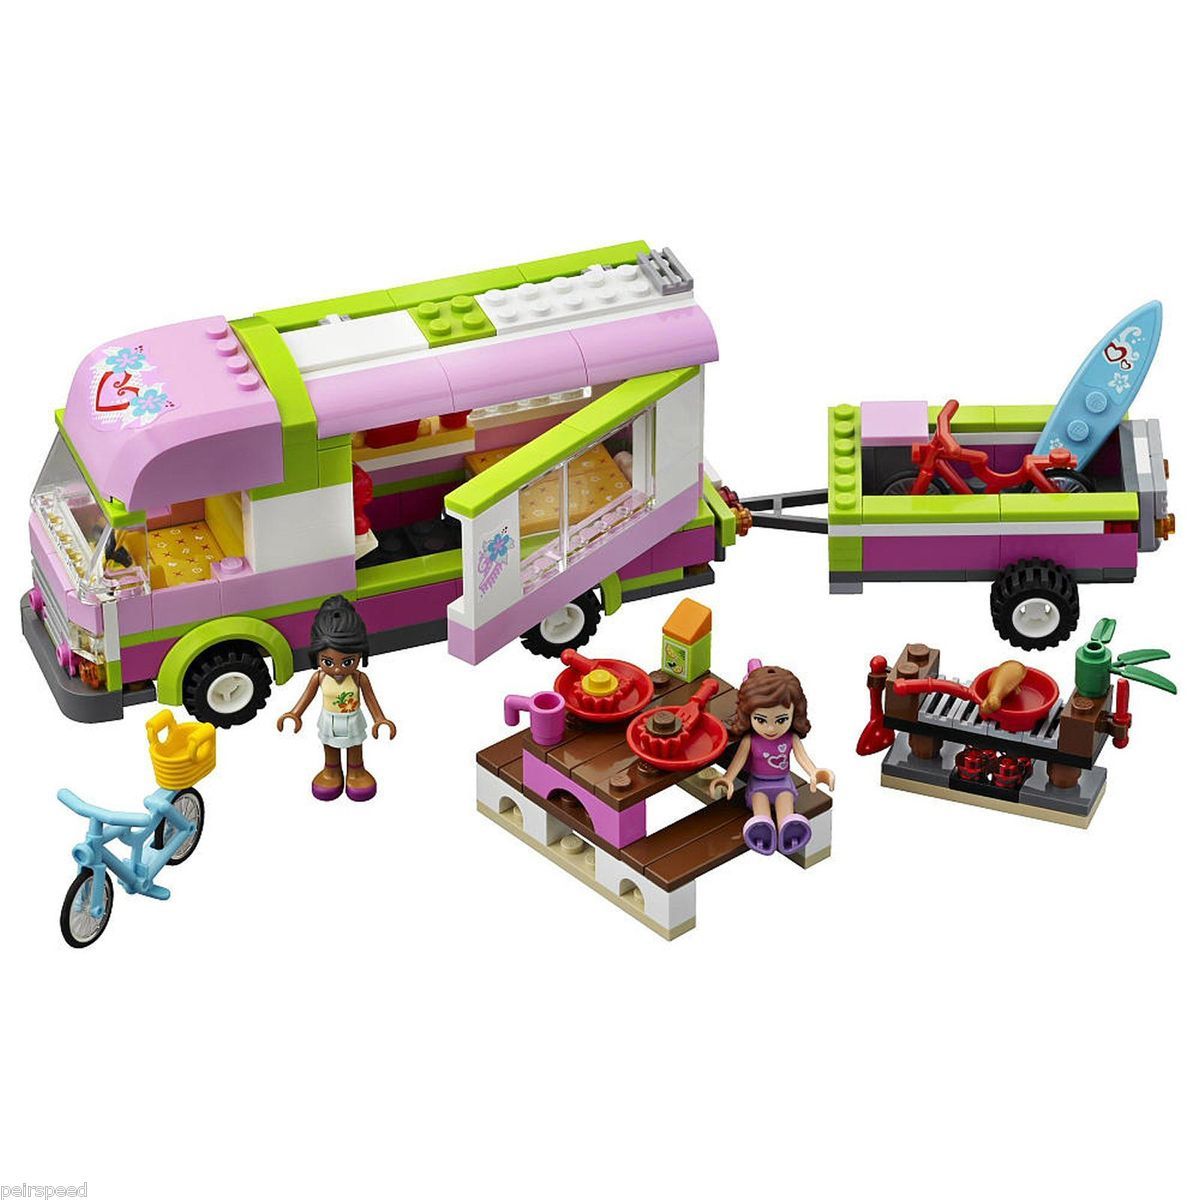 LEGO Friends Adventure Camper (3184) New Summer 2012 Released, Caravan